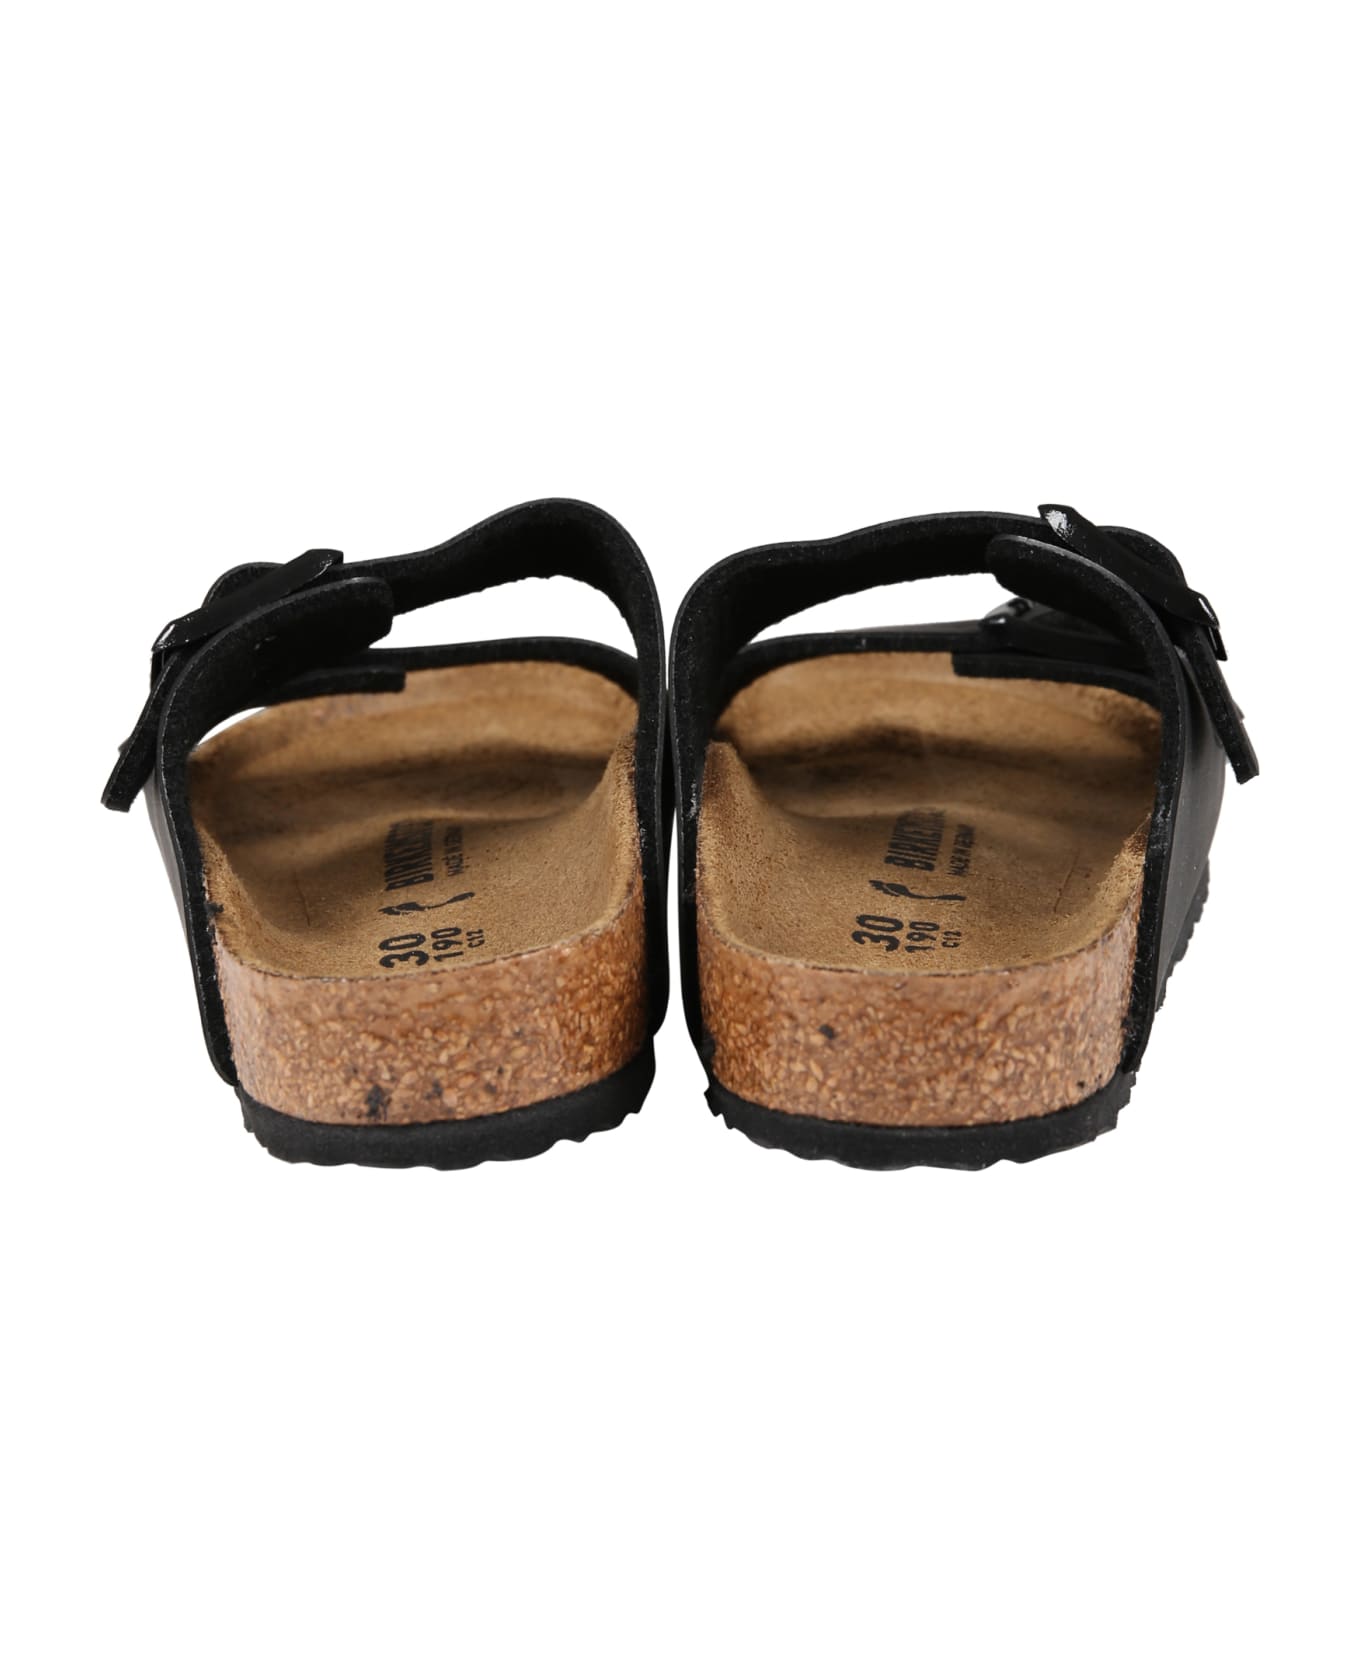 Birkenstock Black Sandals "arizona Eva" For Kids With Logo - Black